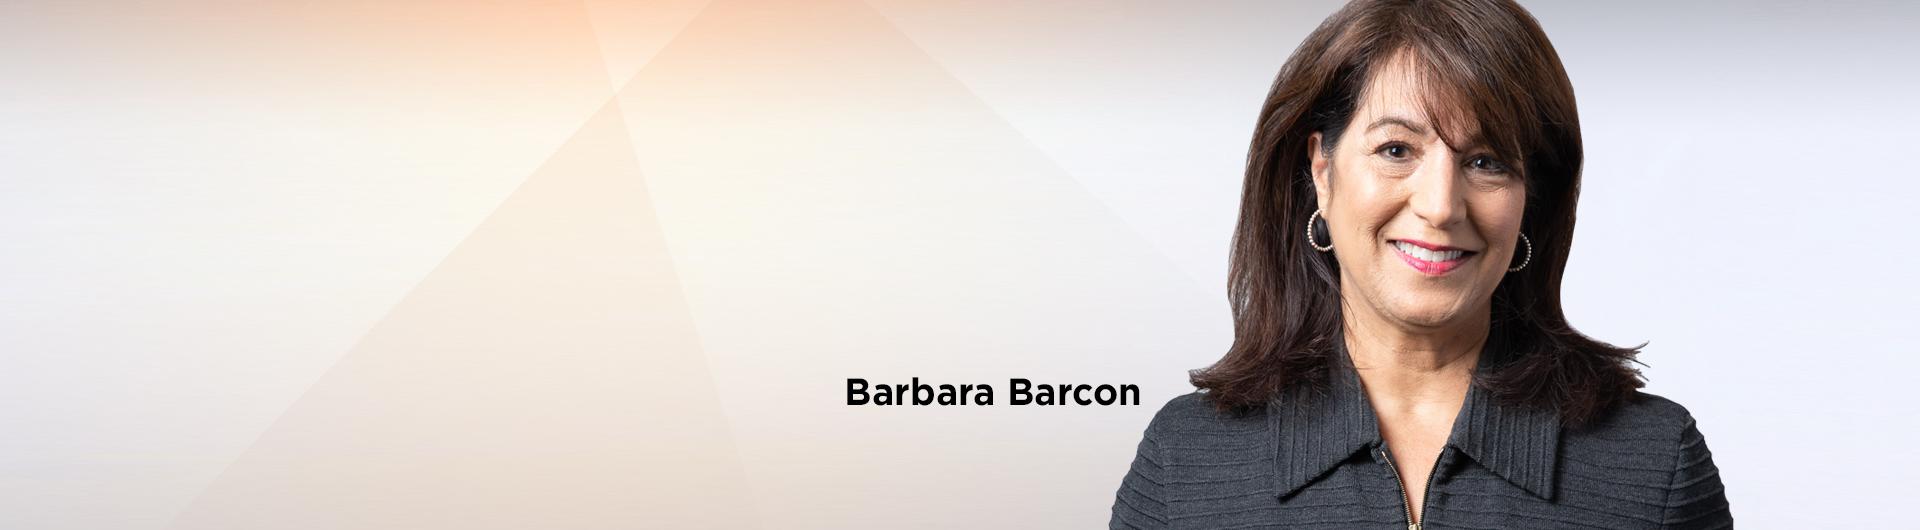 Barcon, Barbara